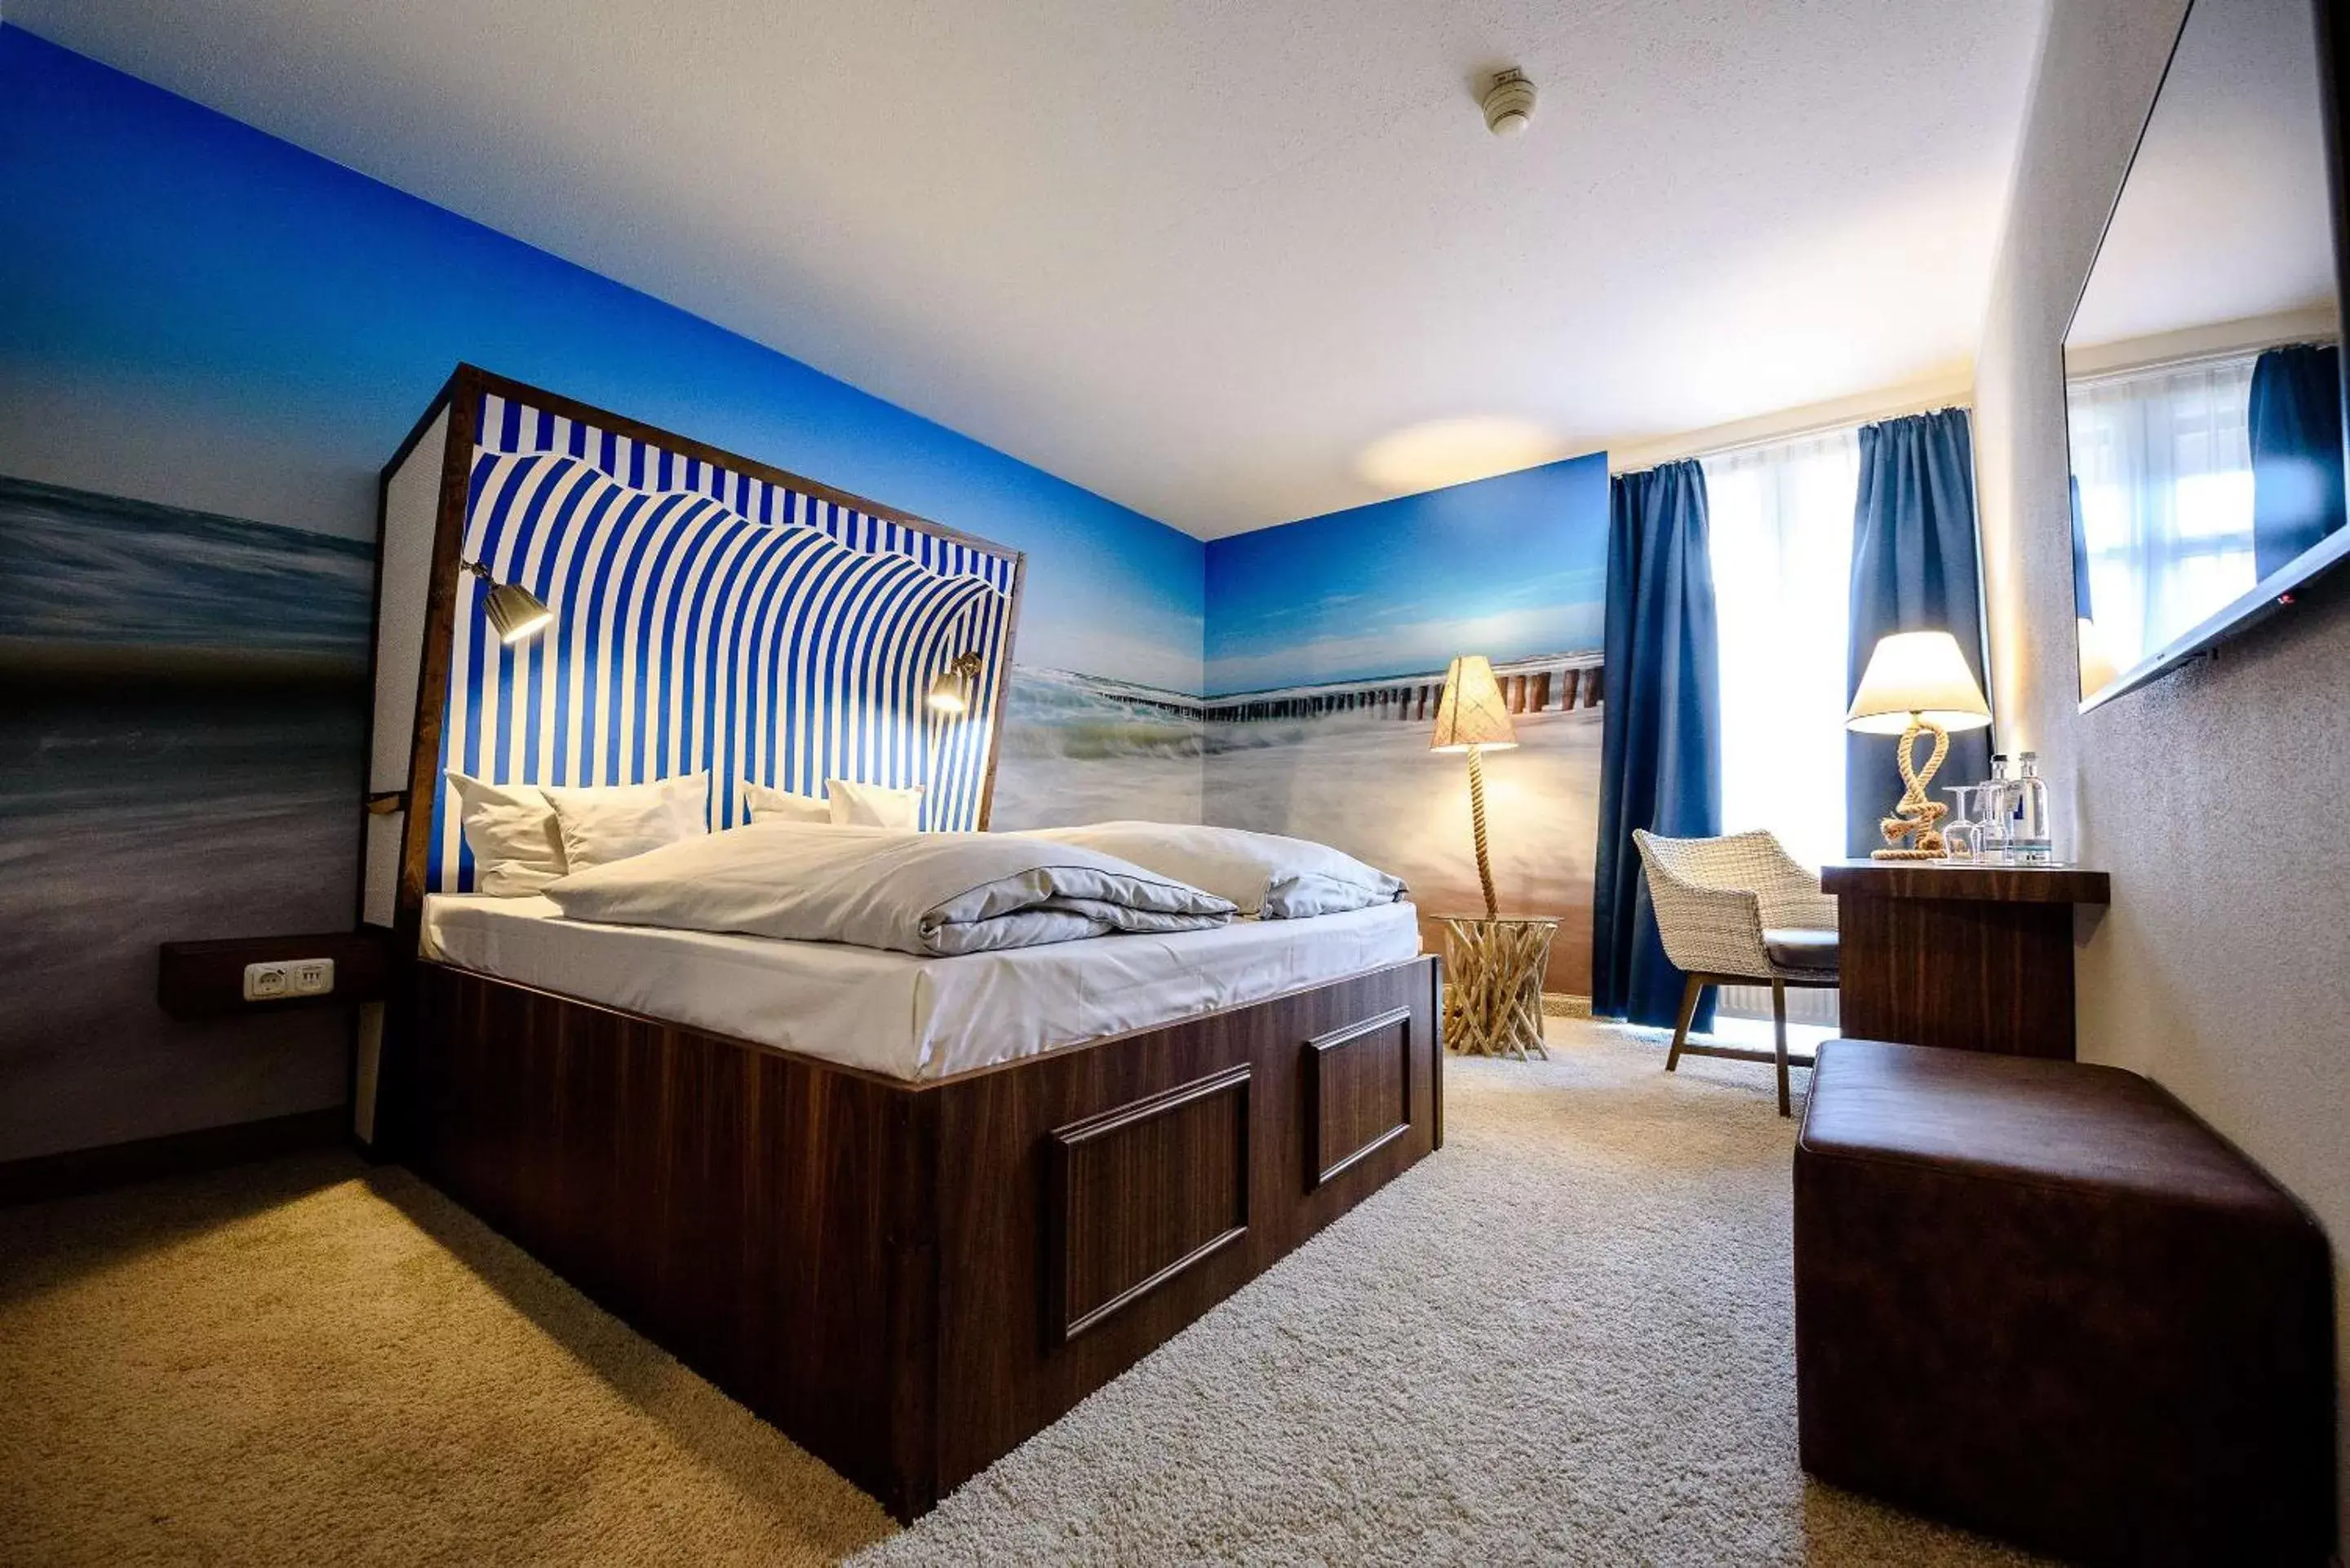 Bedroom, Bed in Dorint Hotel Alzey/Worms